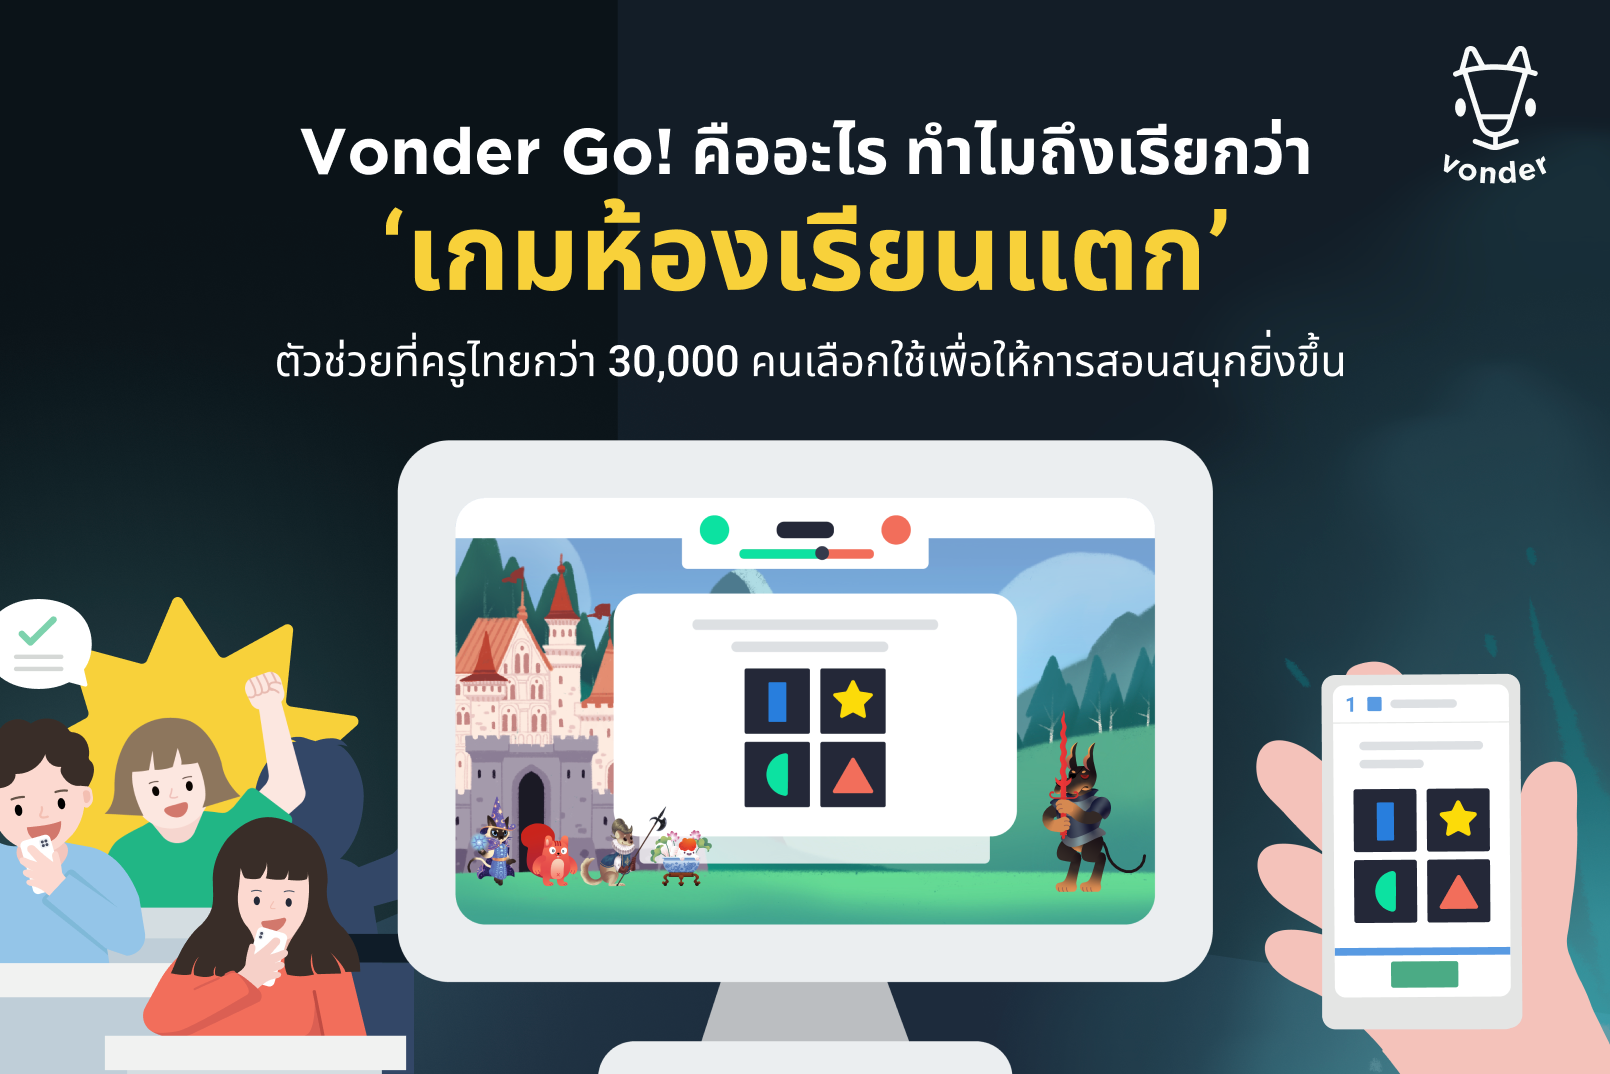 Vonder Go คืออะไร วิธีการใช้งาน Vonder Go เปลี่ยนห้องเรียนให้สนุก สื่อการเรียนการสอนรูปแบบเกม "เกมห้องเรียนแตก"